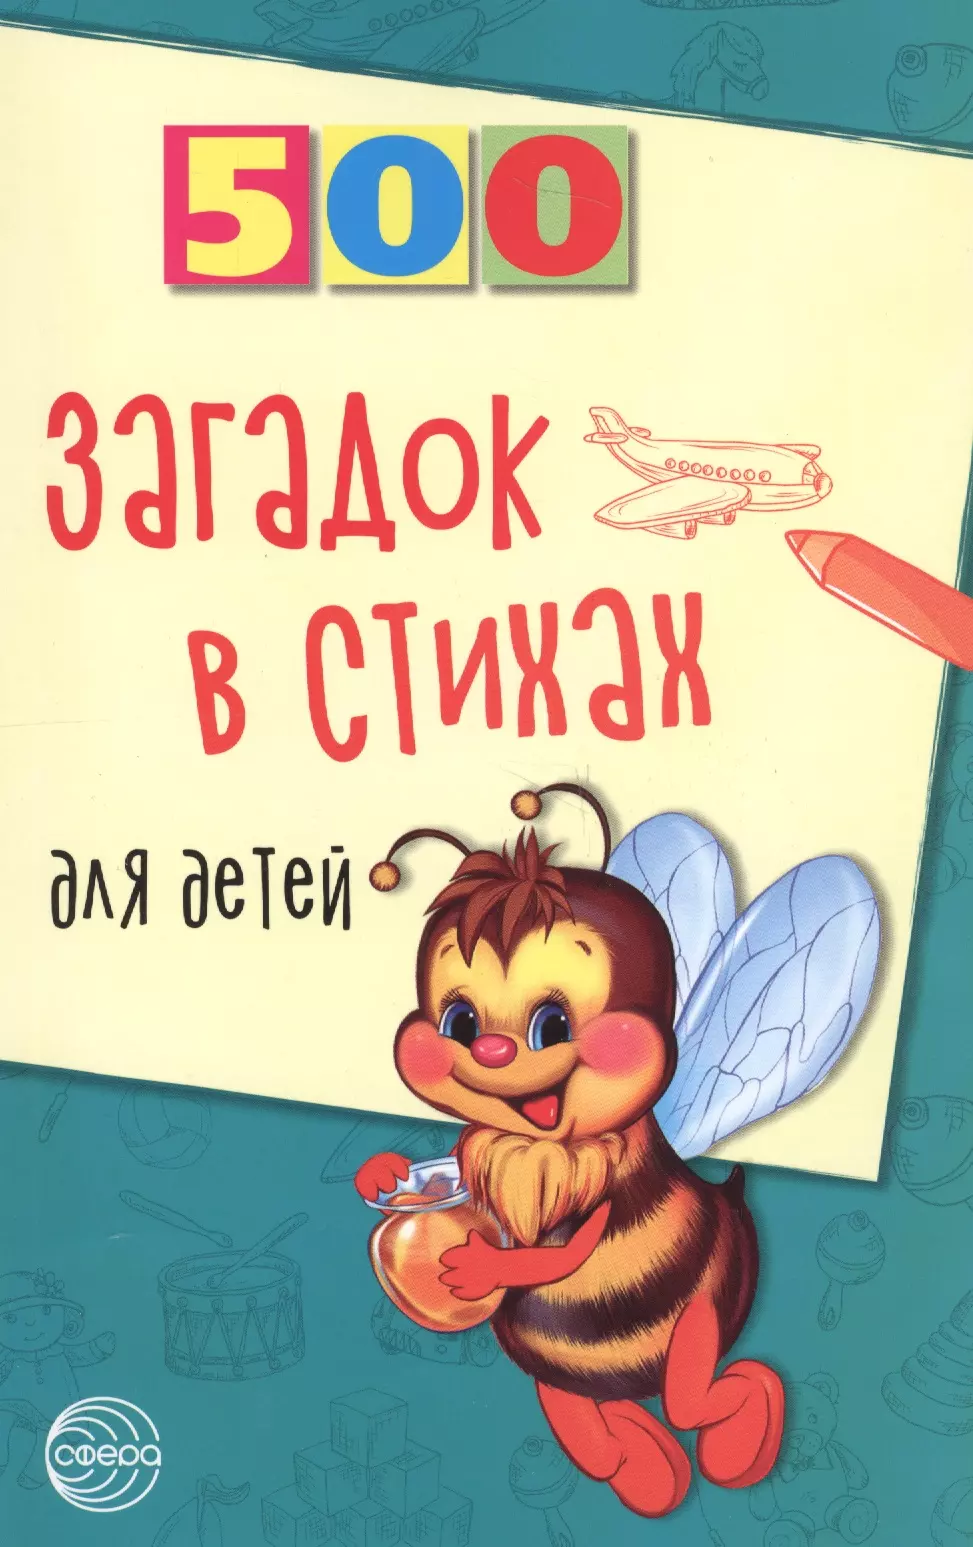 Адарич Евгений Евгеньевич - 500 загадок в стихах для детей